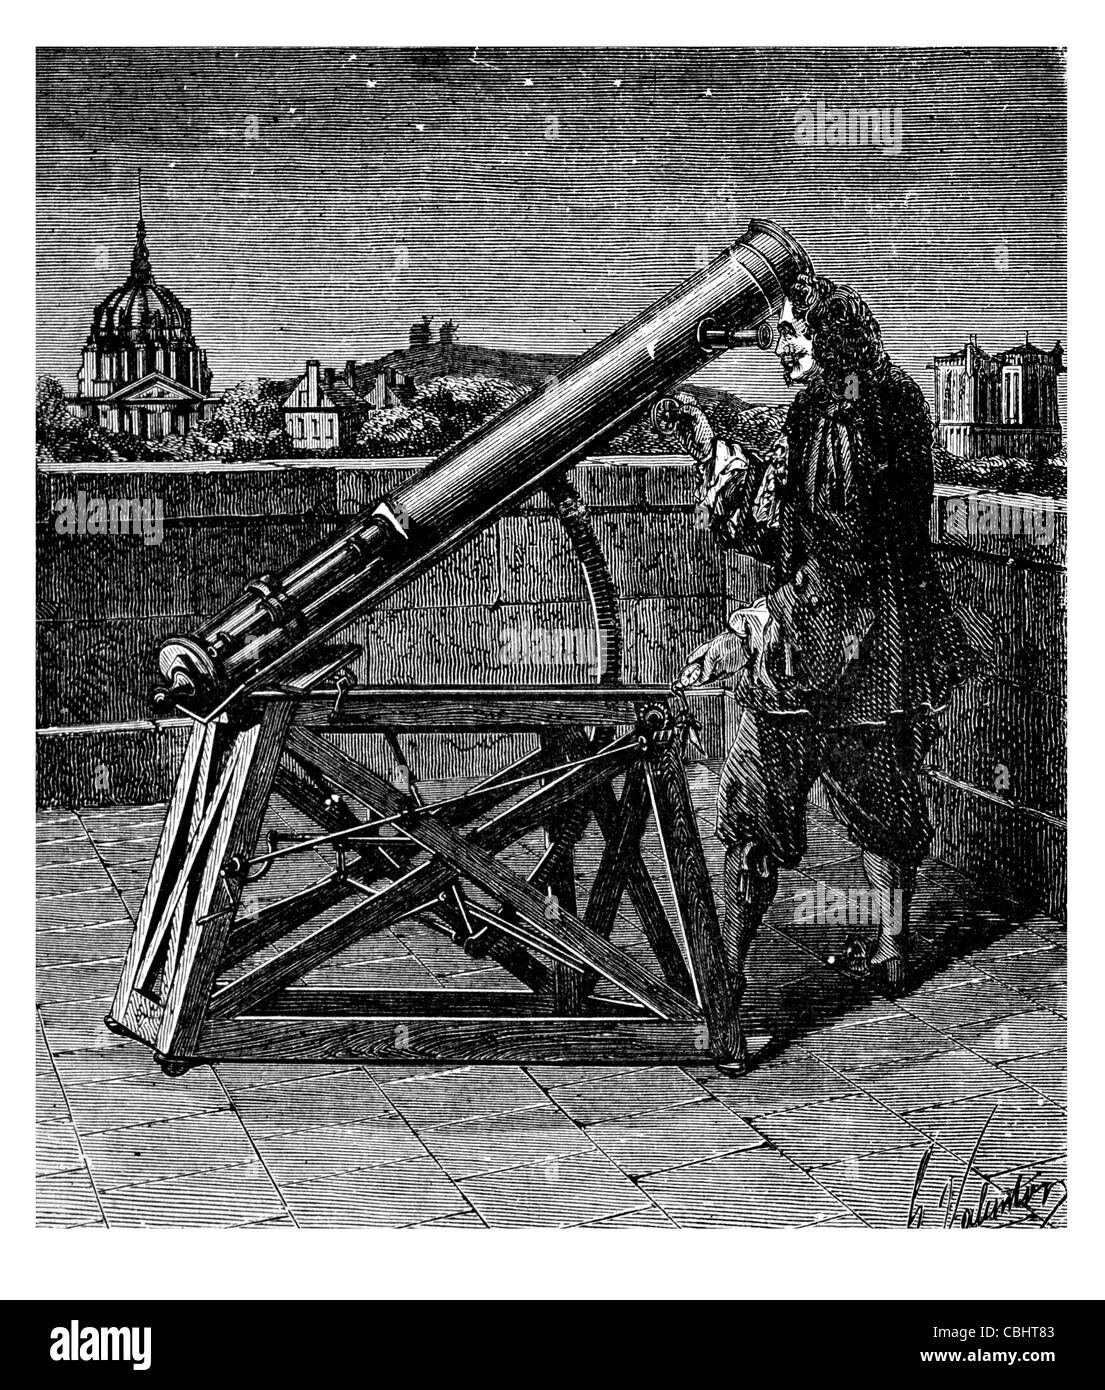 Telescopio de Gregorio telescopio ottico di osservazione astrologia astronomia scienza naturale astronomo scientifica stelle celesti Foto Stock